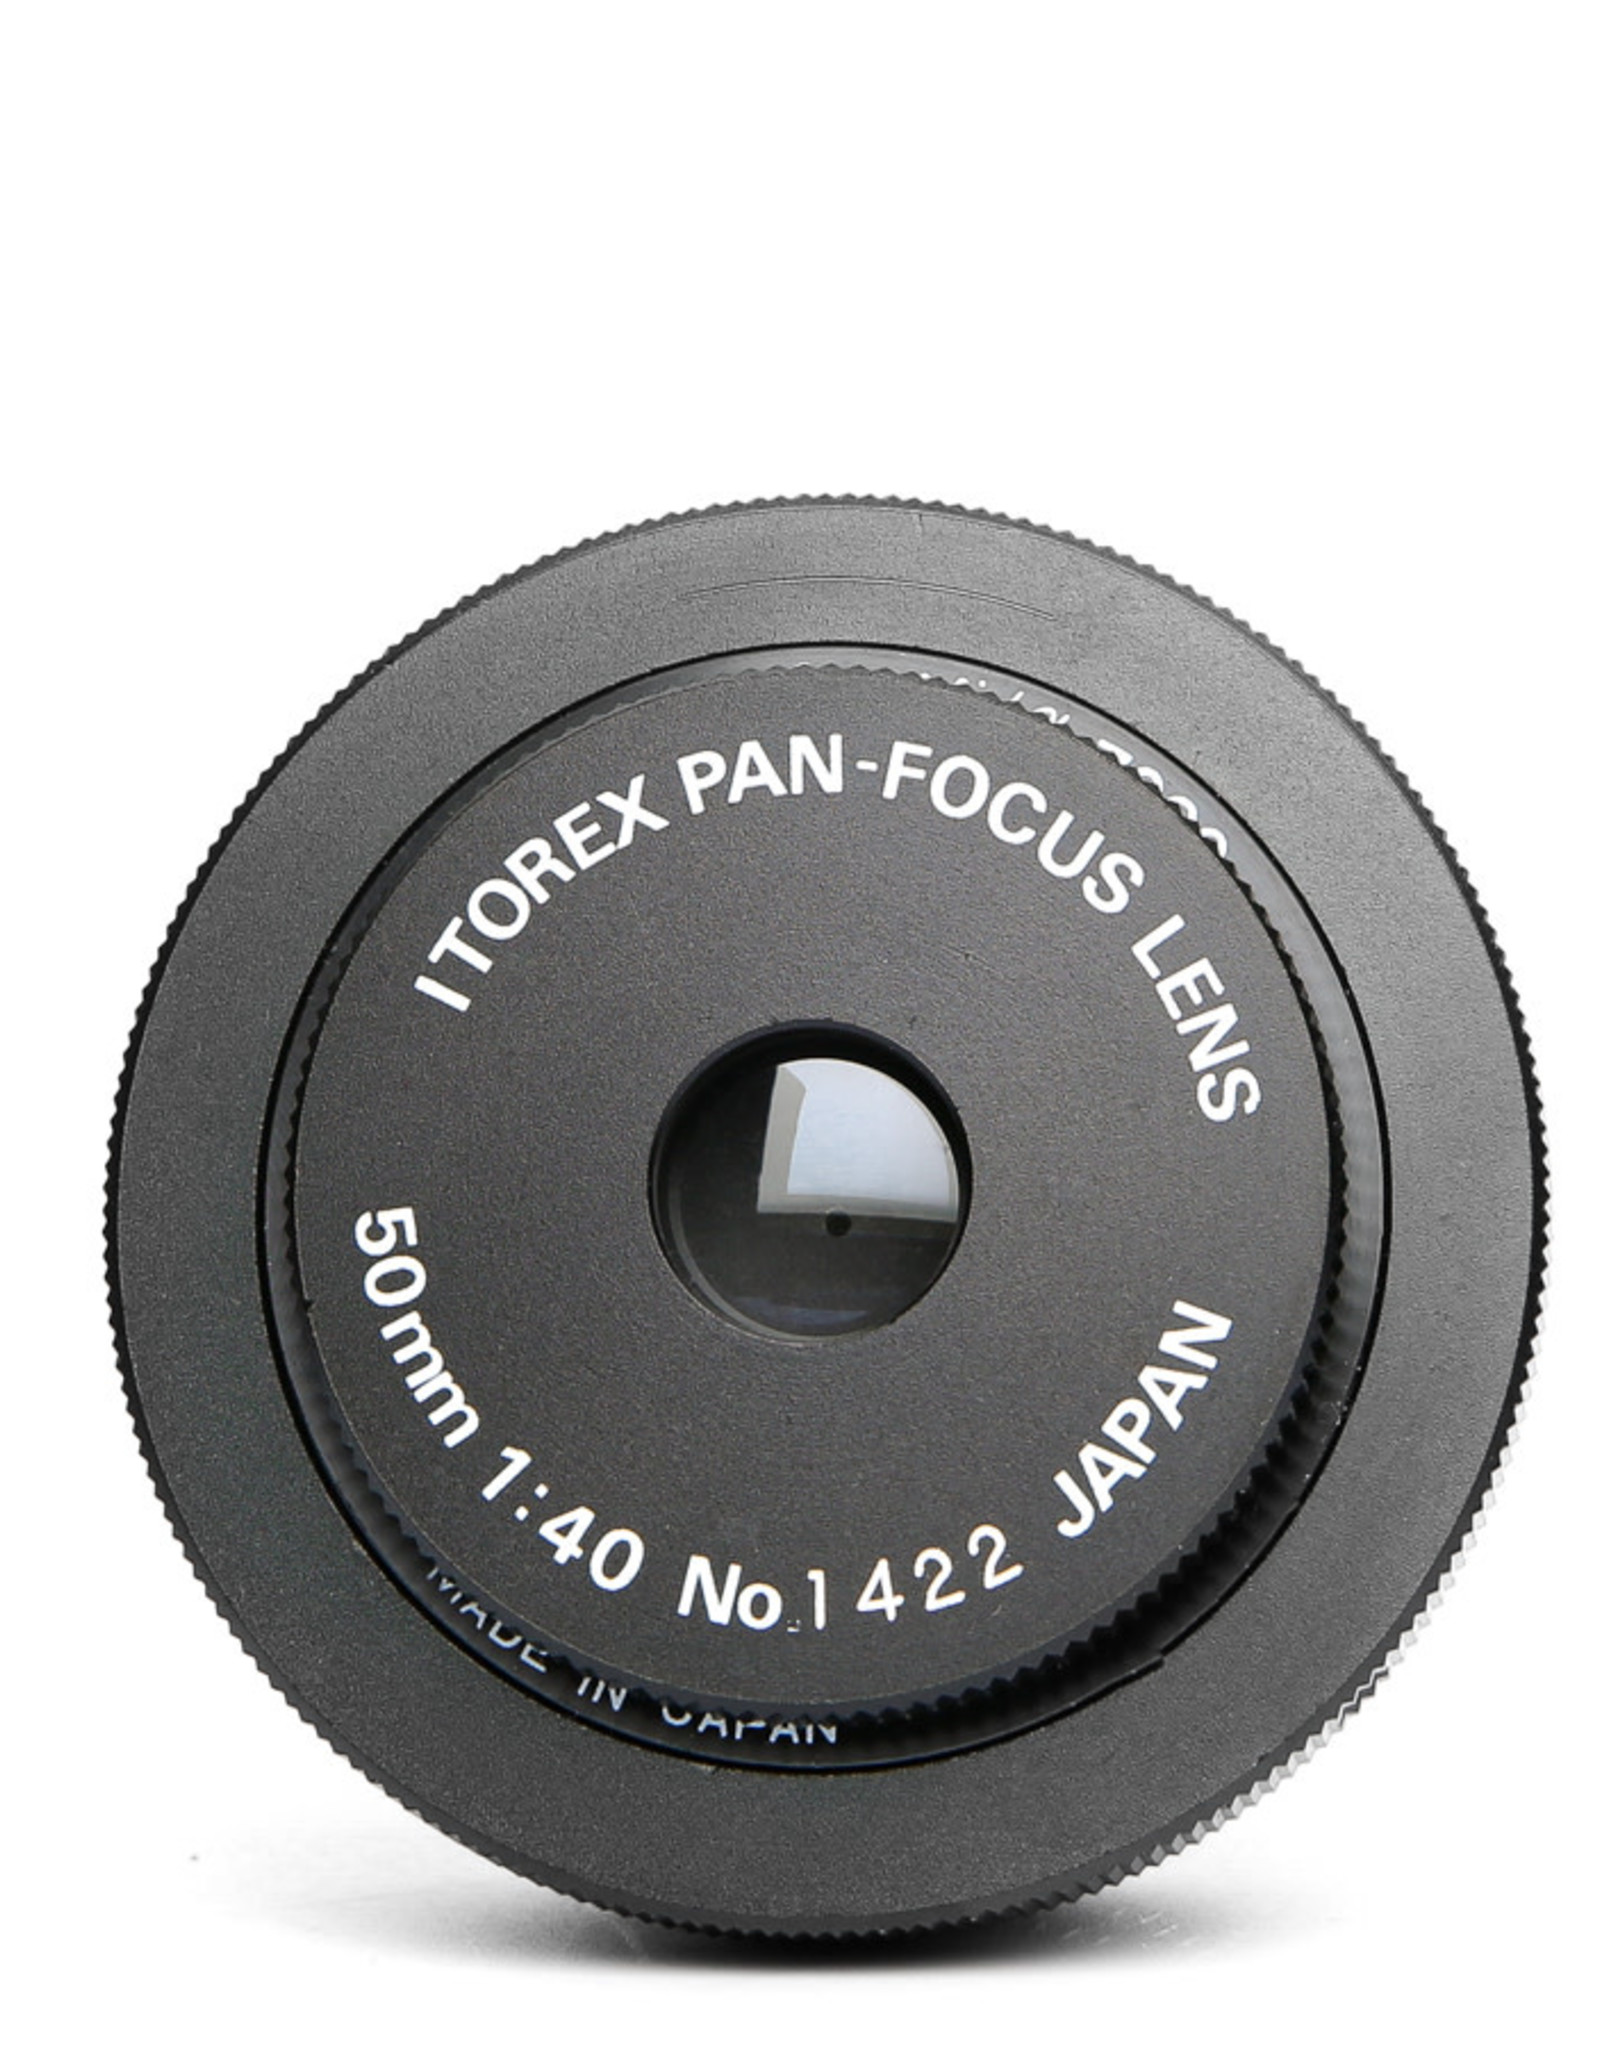 Itorex Itorex Pan-Focus Lens 50mm f40 (Universal T Mount)